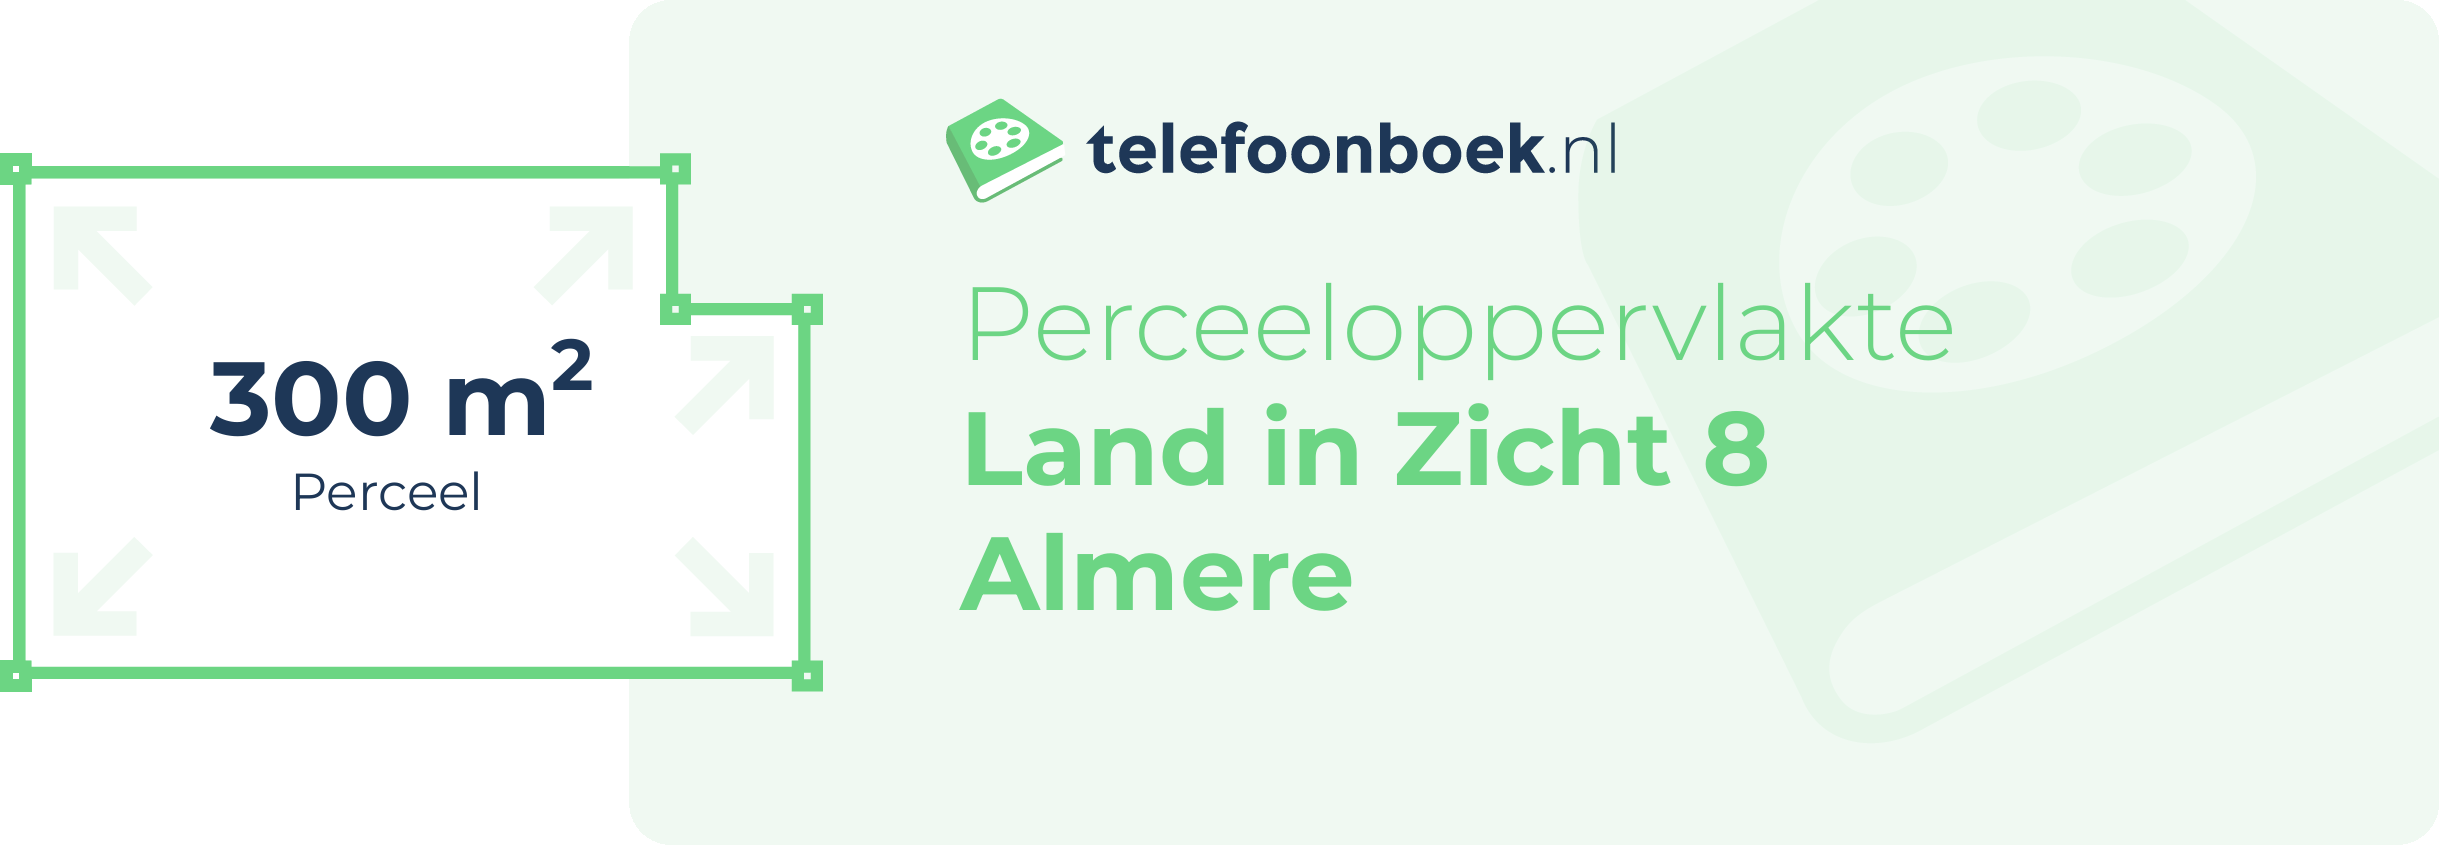 Perceeloppervlakte Land In Zicht 8 Almere